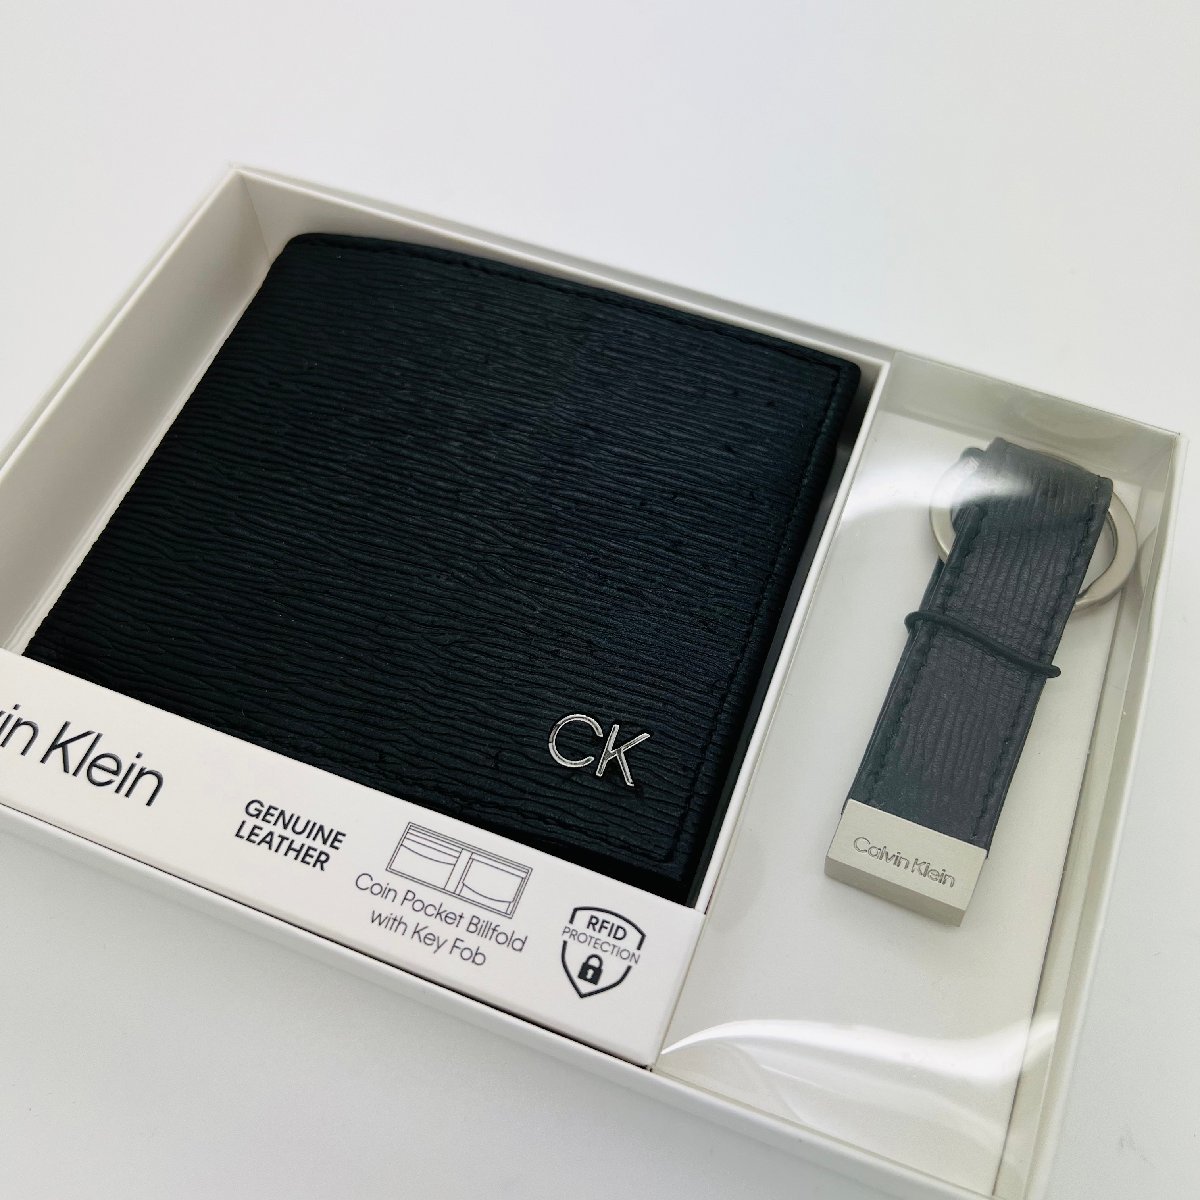 新品 CALVIN KLEIN カルバンクライン 財布 キーリング セット 本革 レザー メンズ 31CK330016 ギフト